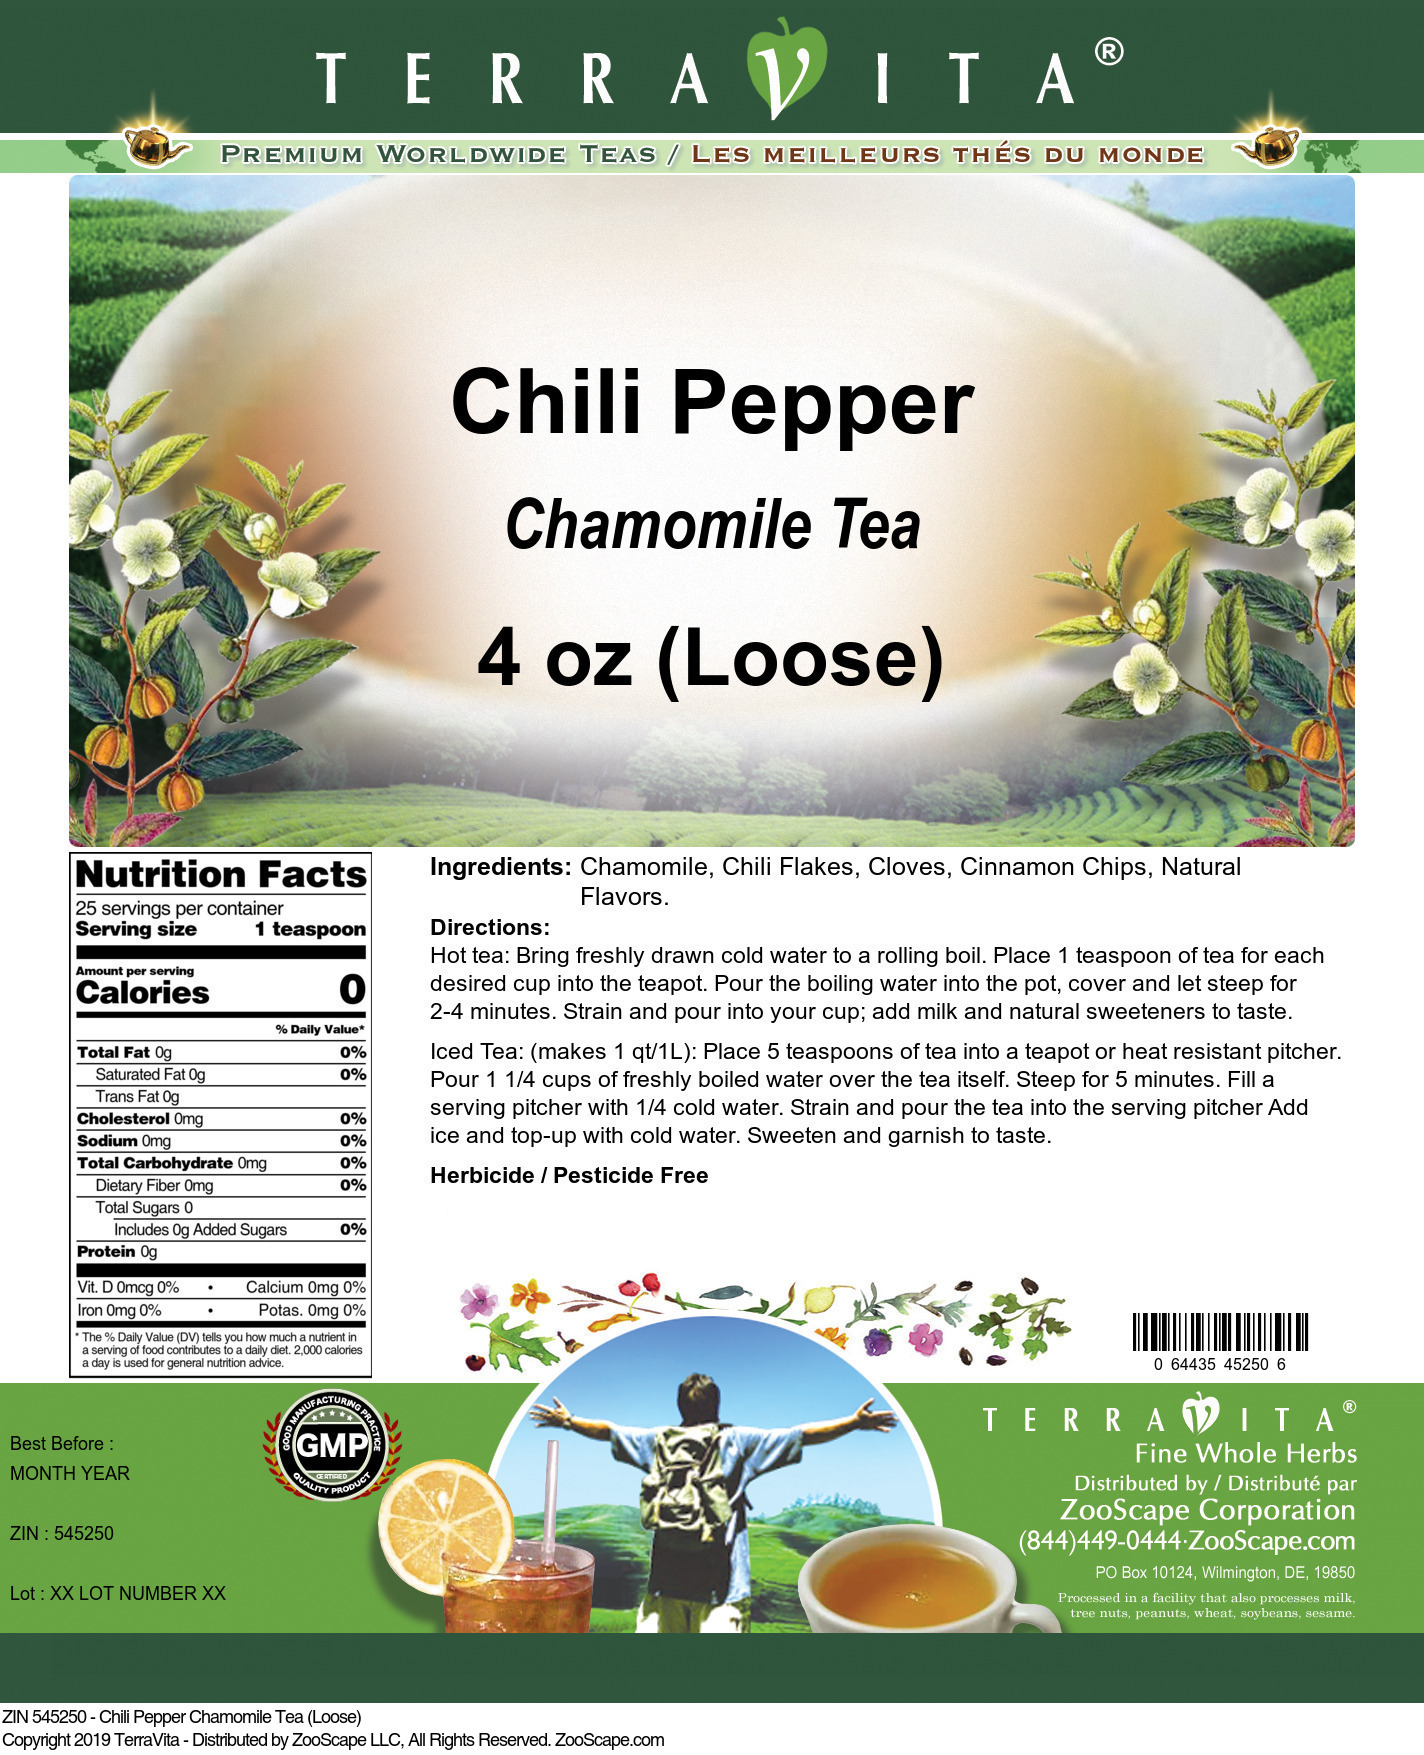 Chili Pepper Chamomile Tea (Loose) - Label